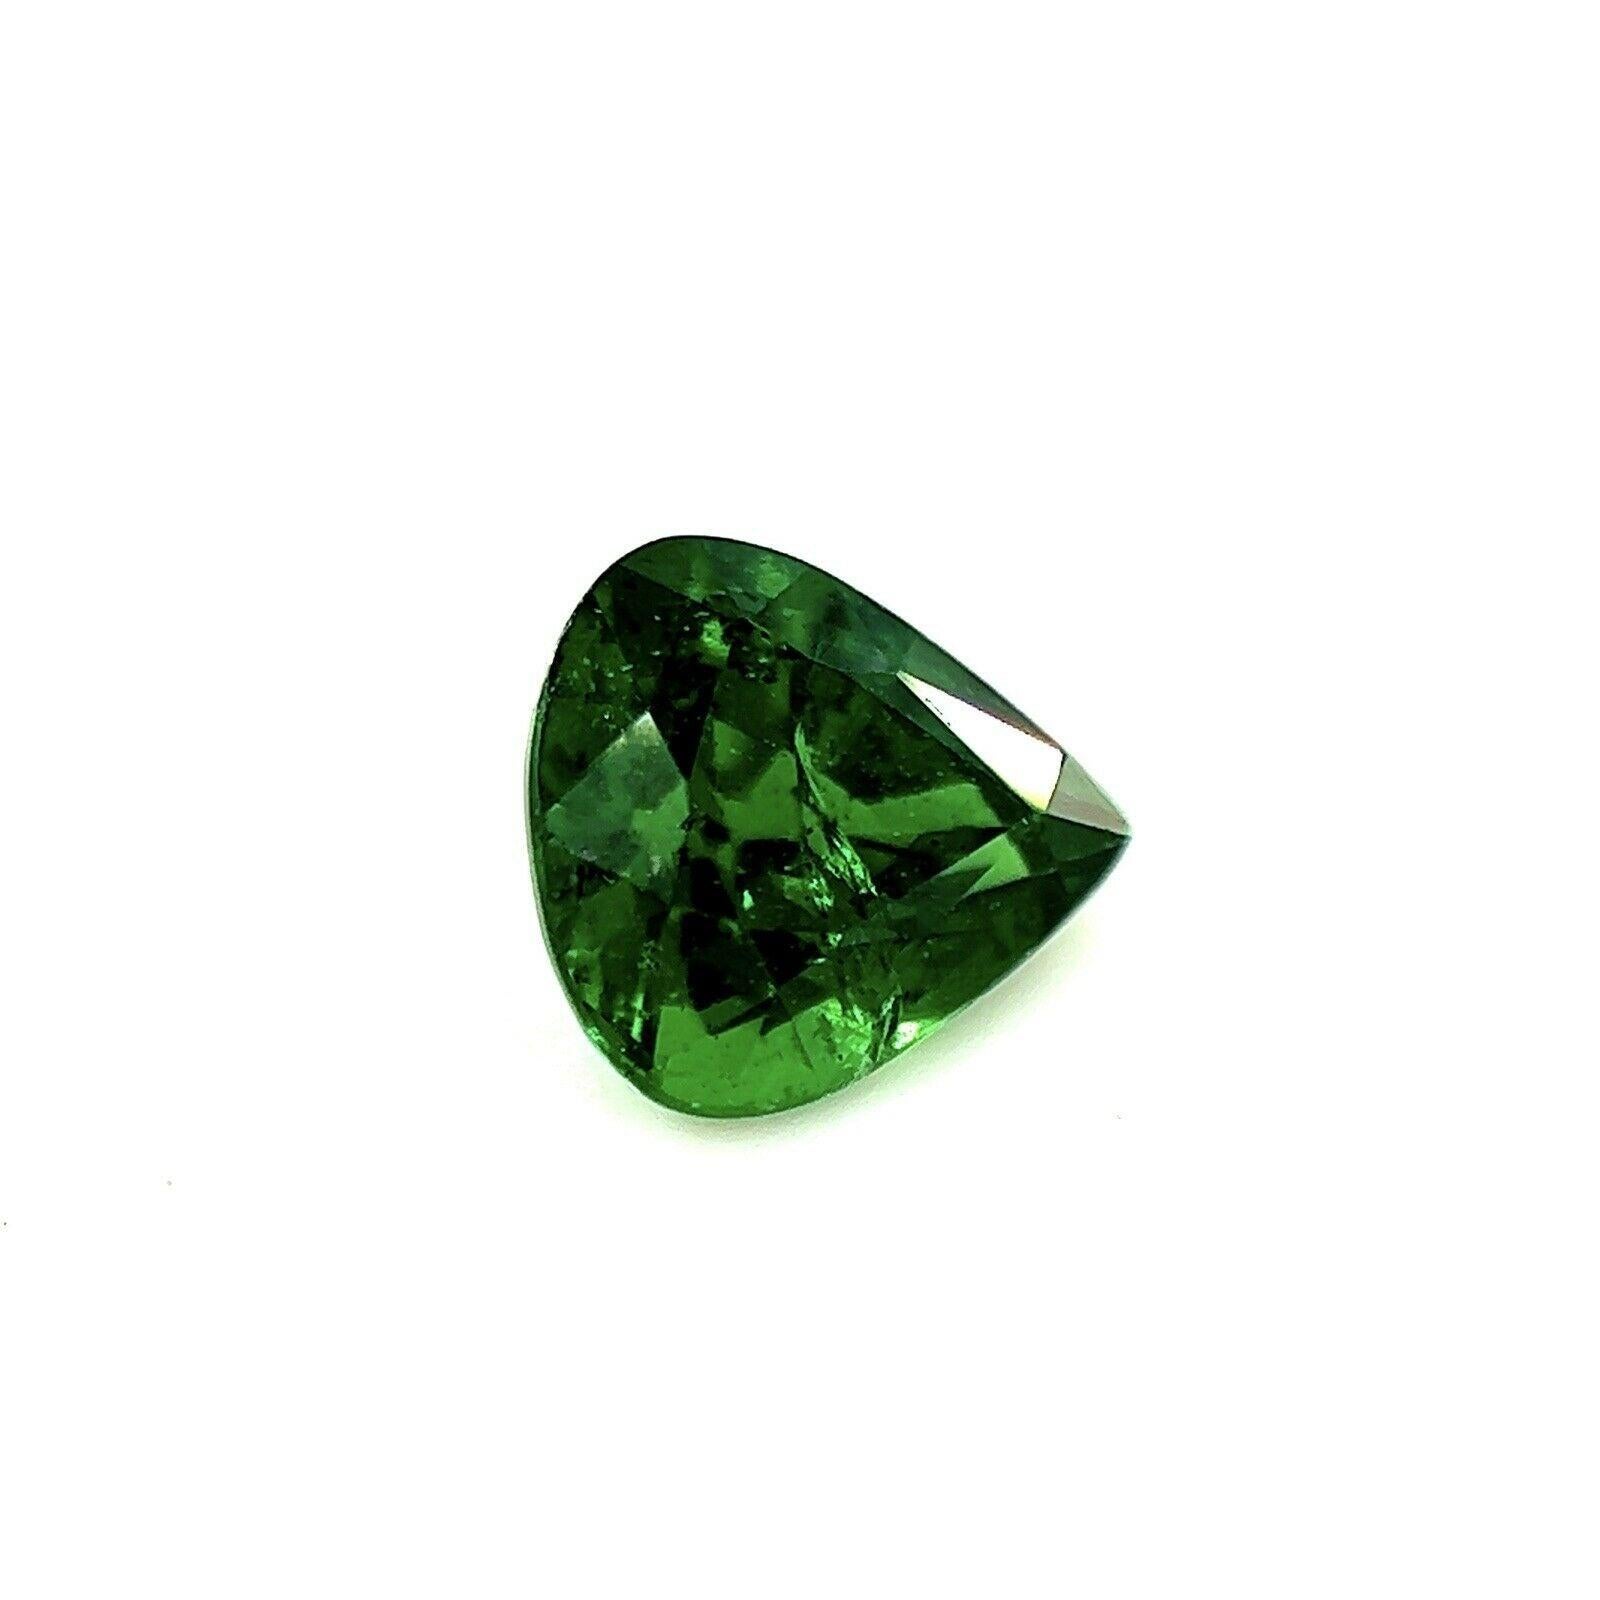 Feine Farbe lebhaft grün Tsavorit Granat 0,83ct Birne Teardrop Schliff Edelstein 6x5,5m

Feiner natürlicher lebhaft grüner Tsavorit-Granat.
0.83-Karat-Stein mit einer schönen lebhaften grünen Farbe und guter Reinheit. Einige kleine Einschlüsse